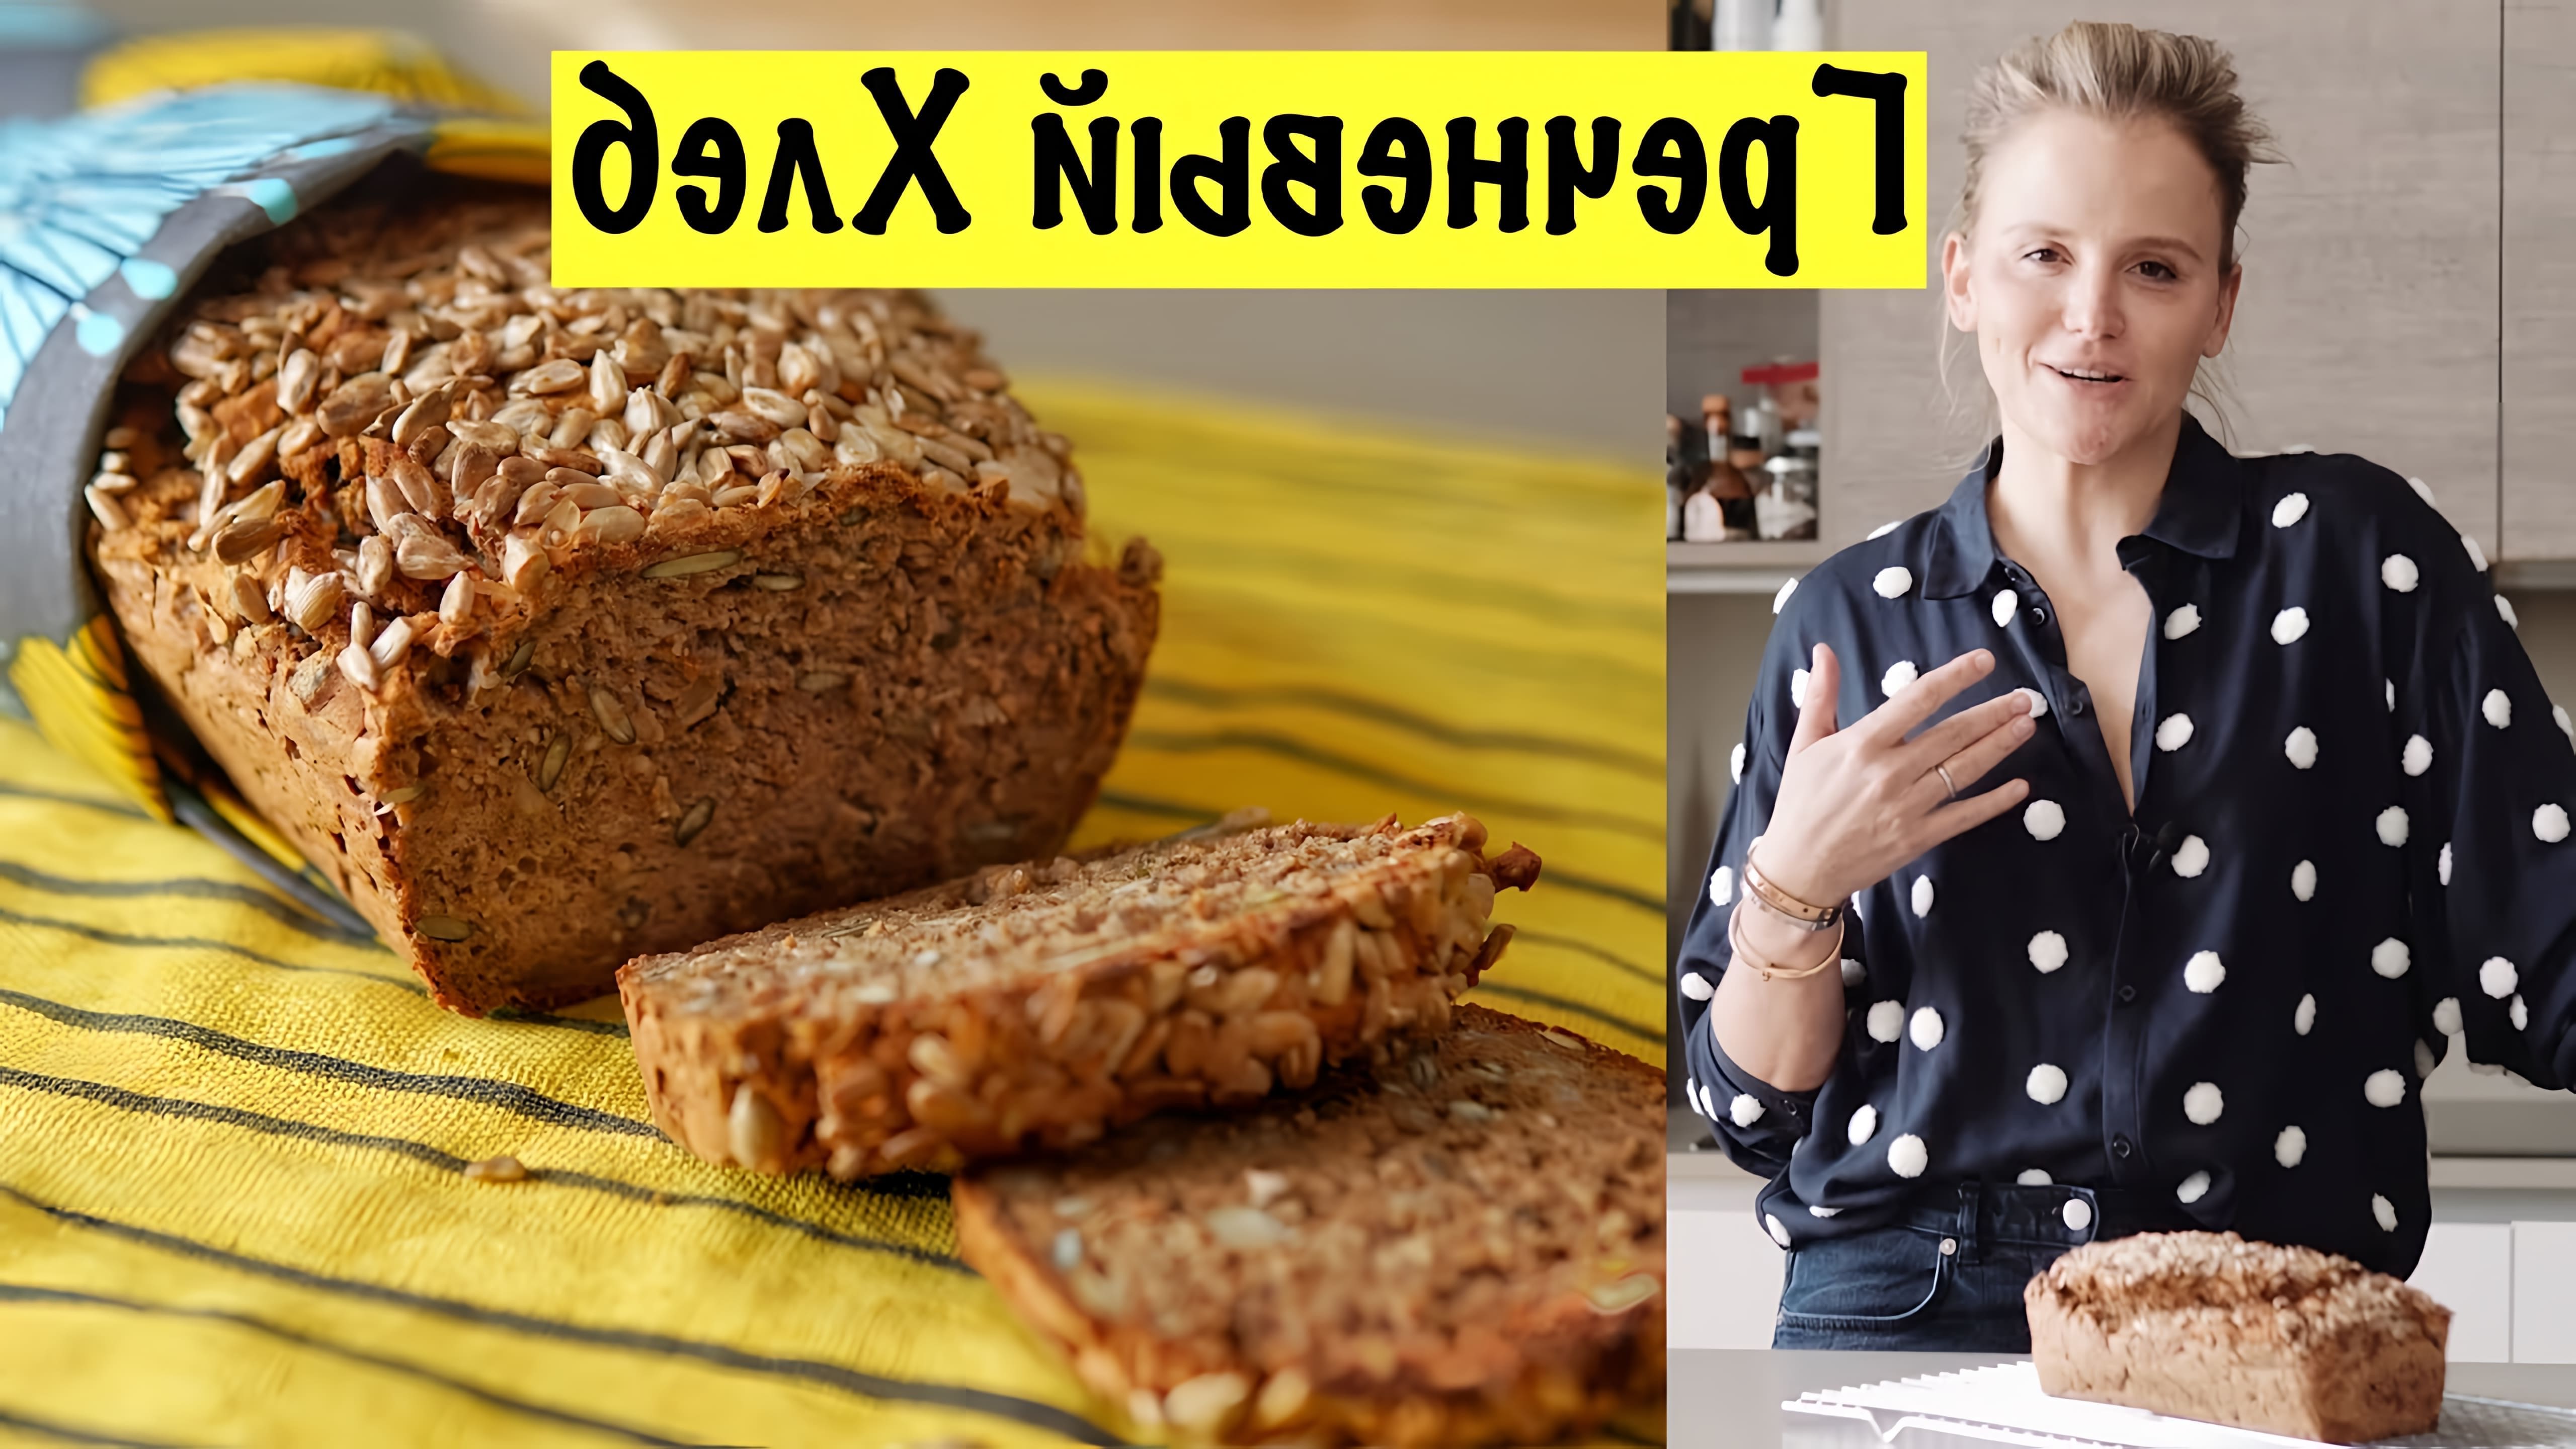 В этом видео демонстрируется рецепт гречневого хлеба без глютена